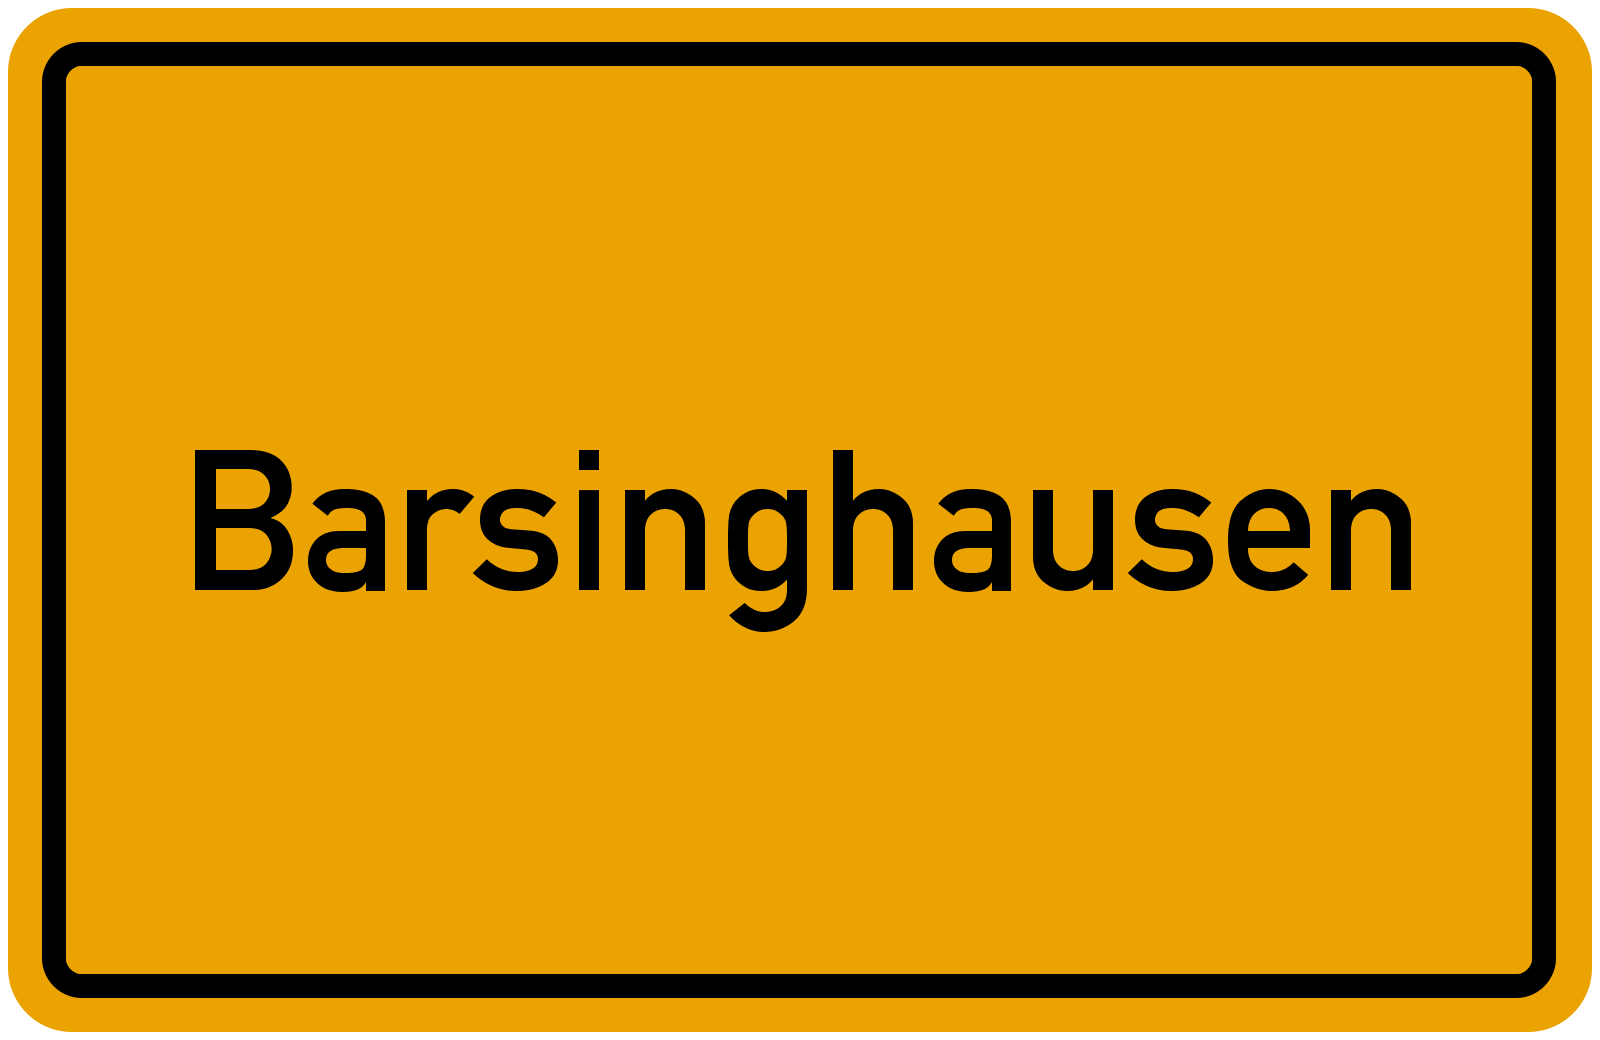 barsinghausen